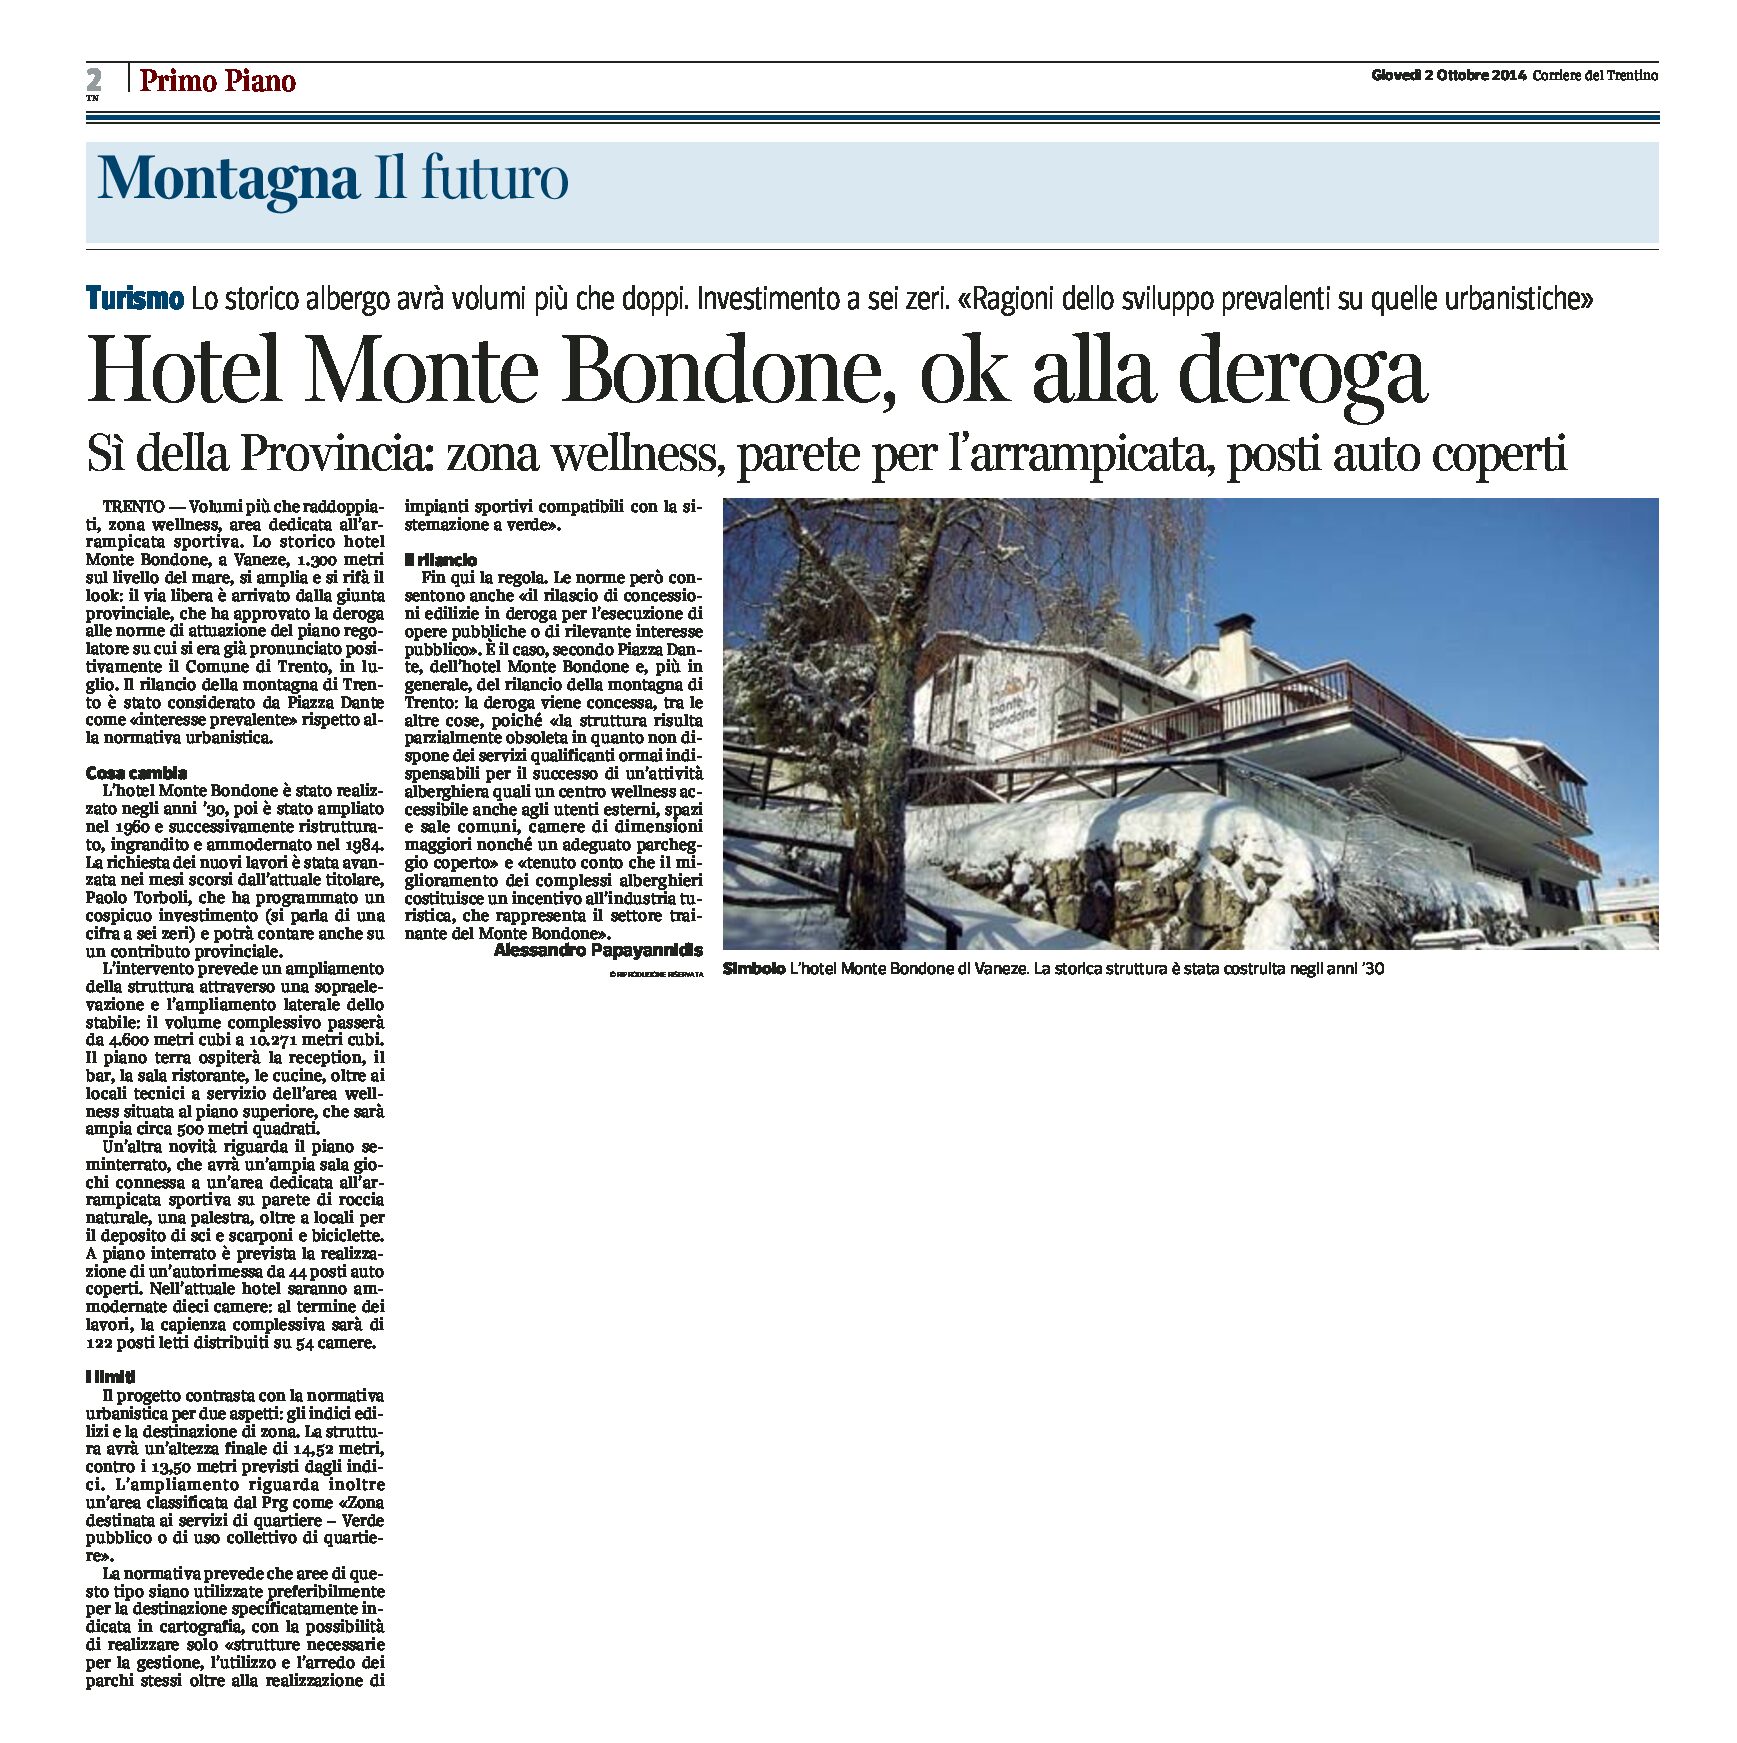 Hotel Monte Bondone: sì della Provincia. Zona wellness, parete per arrampicata e posti auto coperti